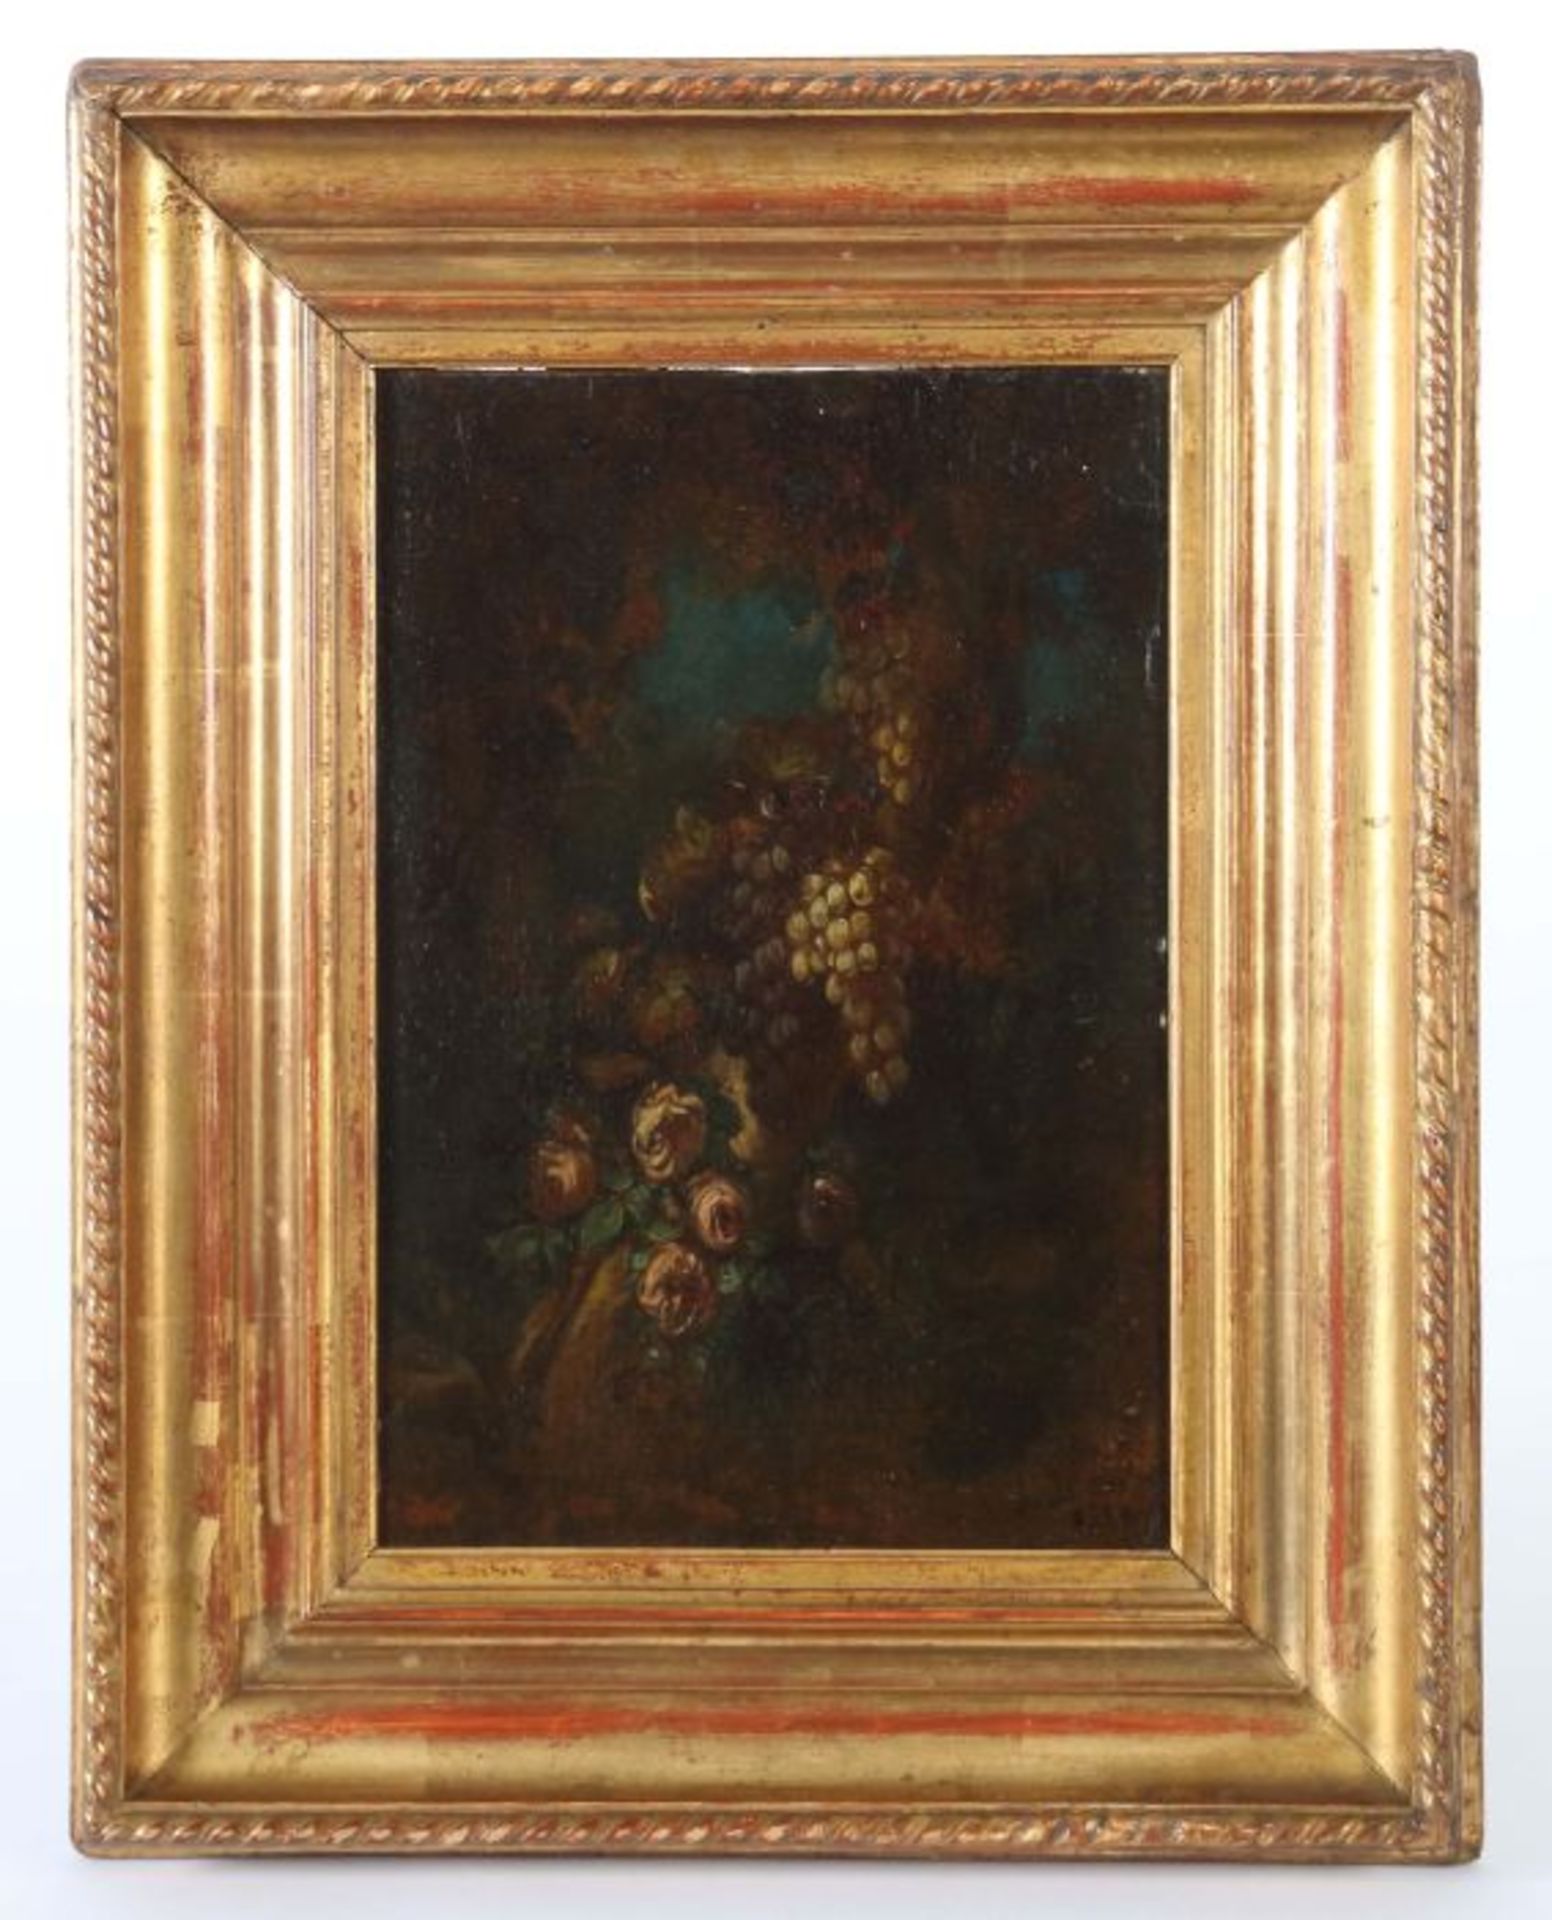 Stilllebenmaler des 19. Jh. "Weinstock mit Rosenblüten", vor dunkler Felsenlandschaft, unten rechts - Bild 2 aus 5